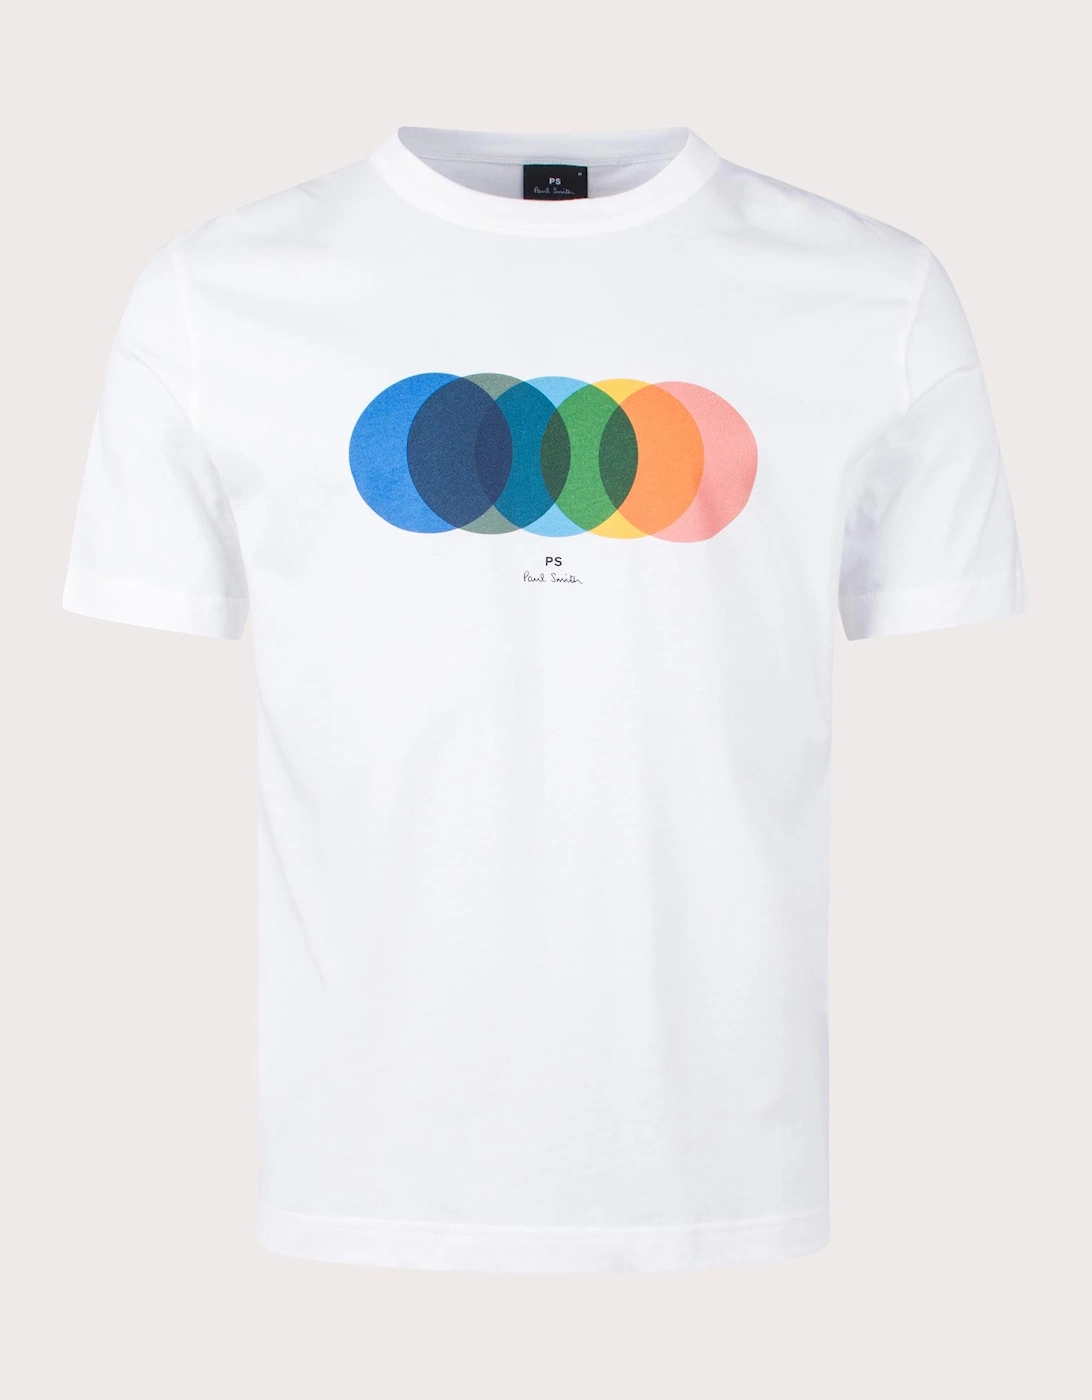 Circles T-Shirt, 3 of 2